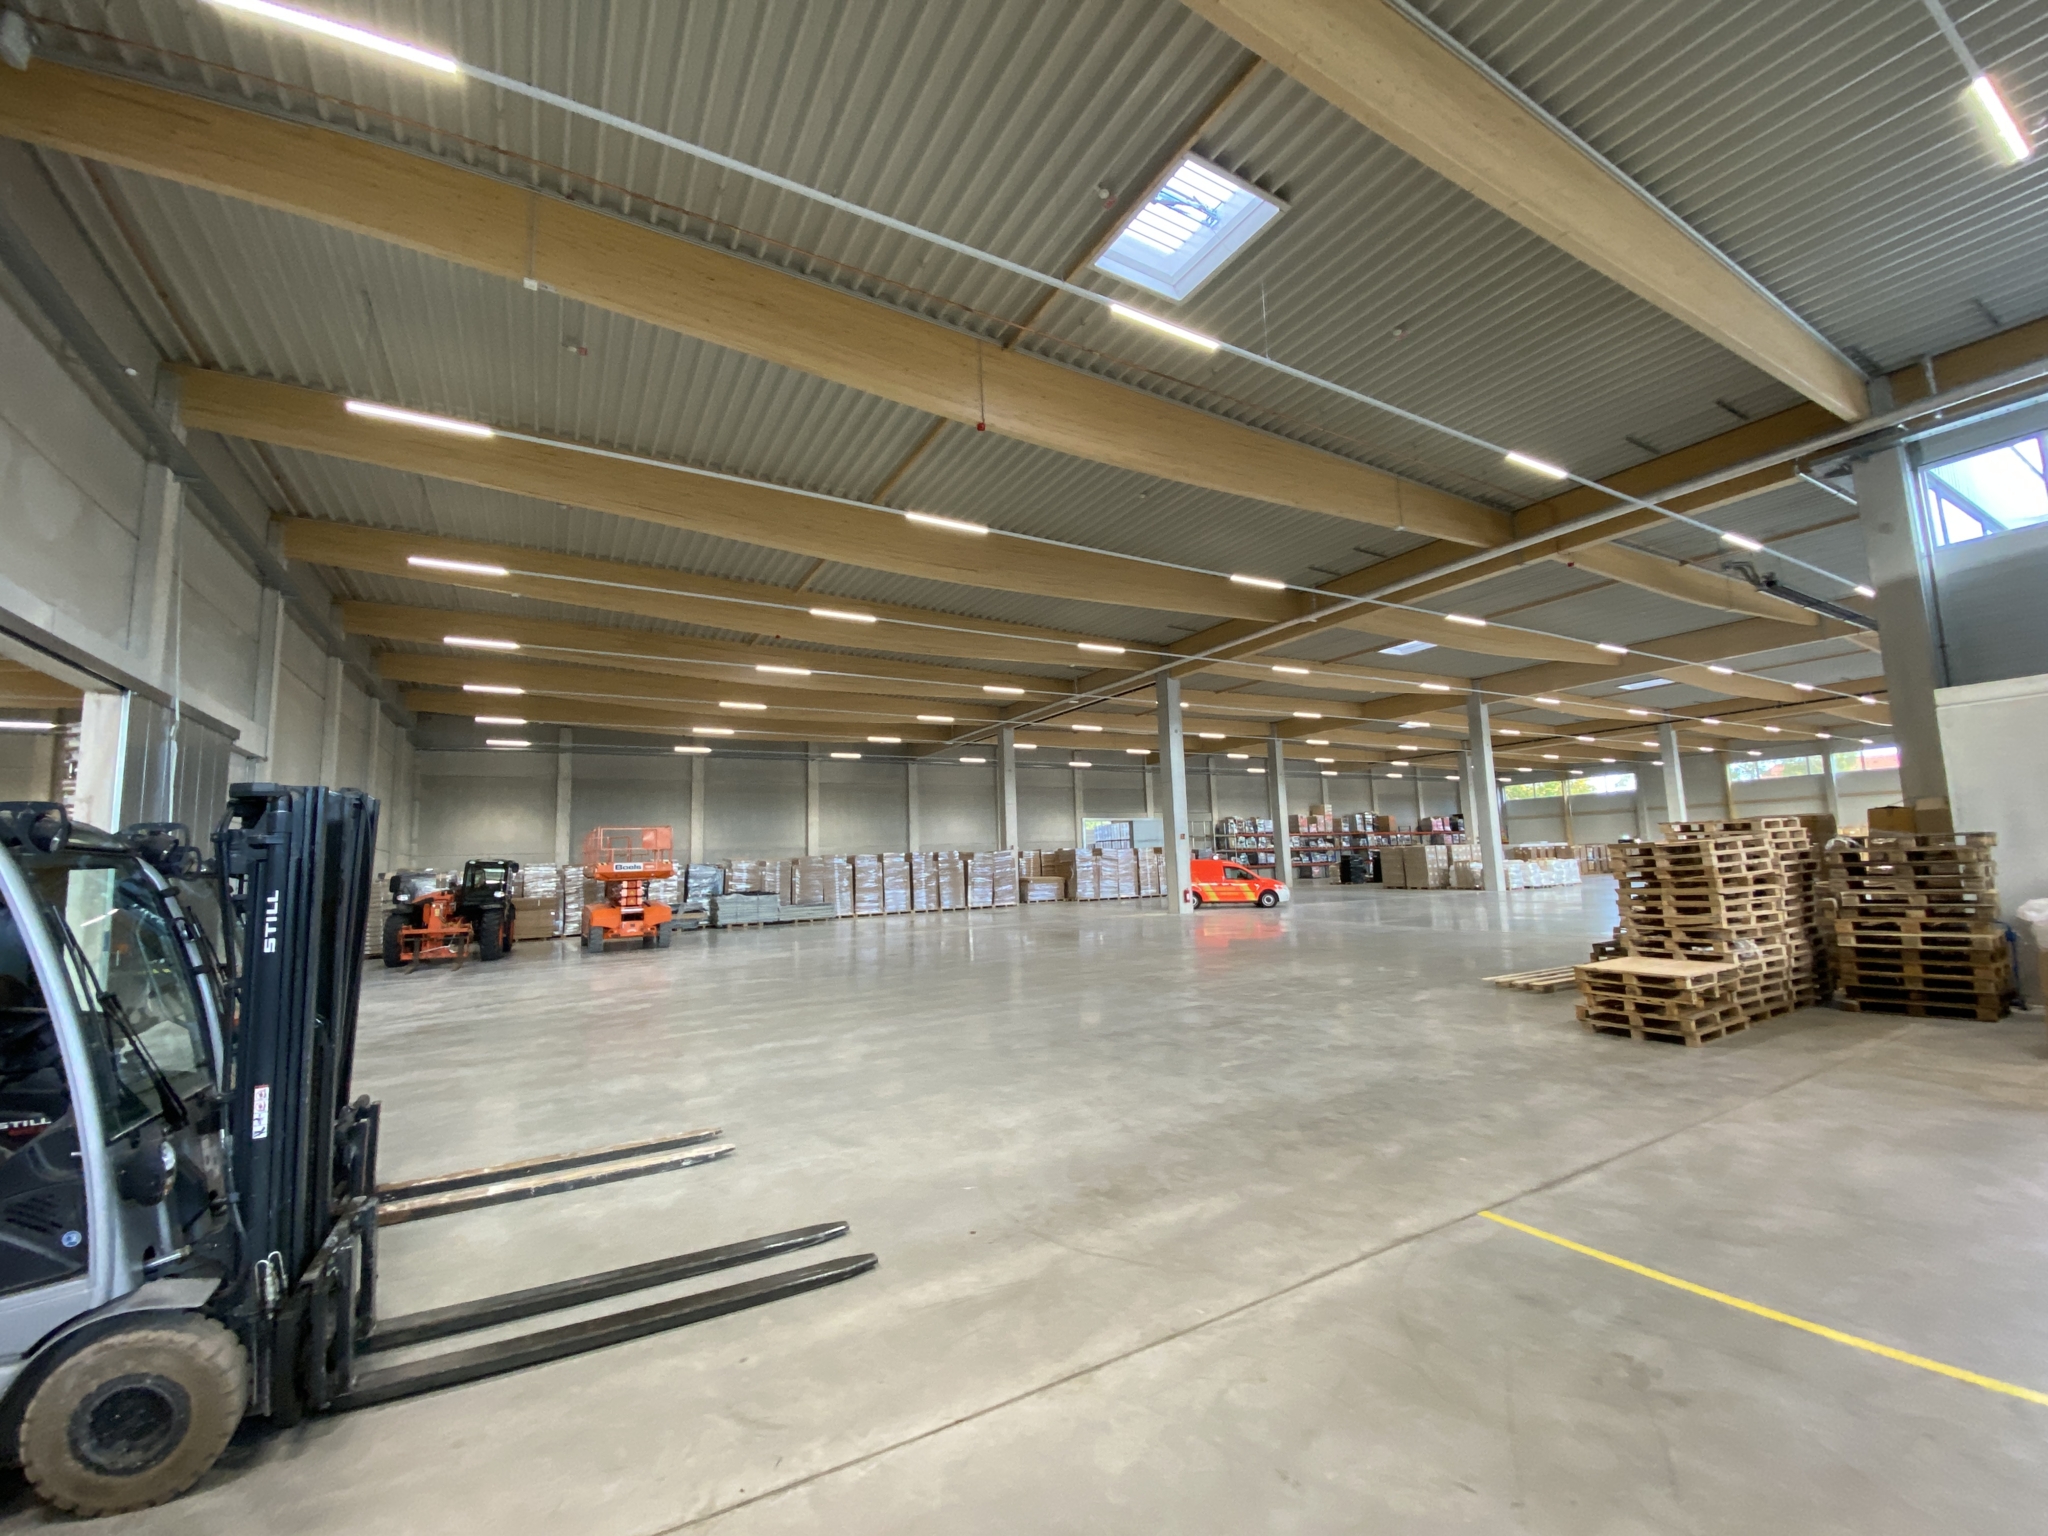 Bilder aus dem neuen Logistikstandort für den Bevölkerungsschutz in der Landeshauptstadt Hannover.